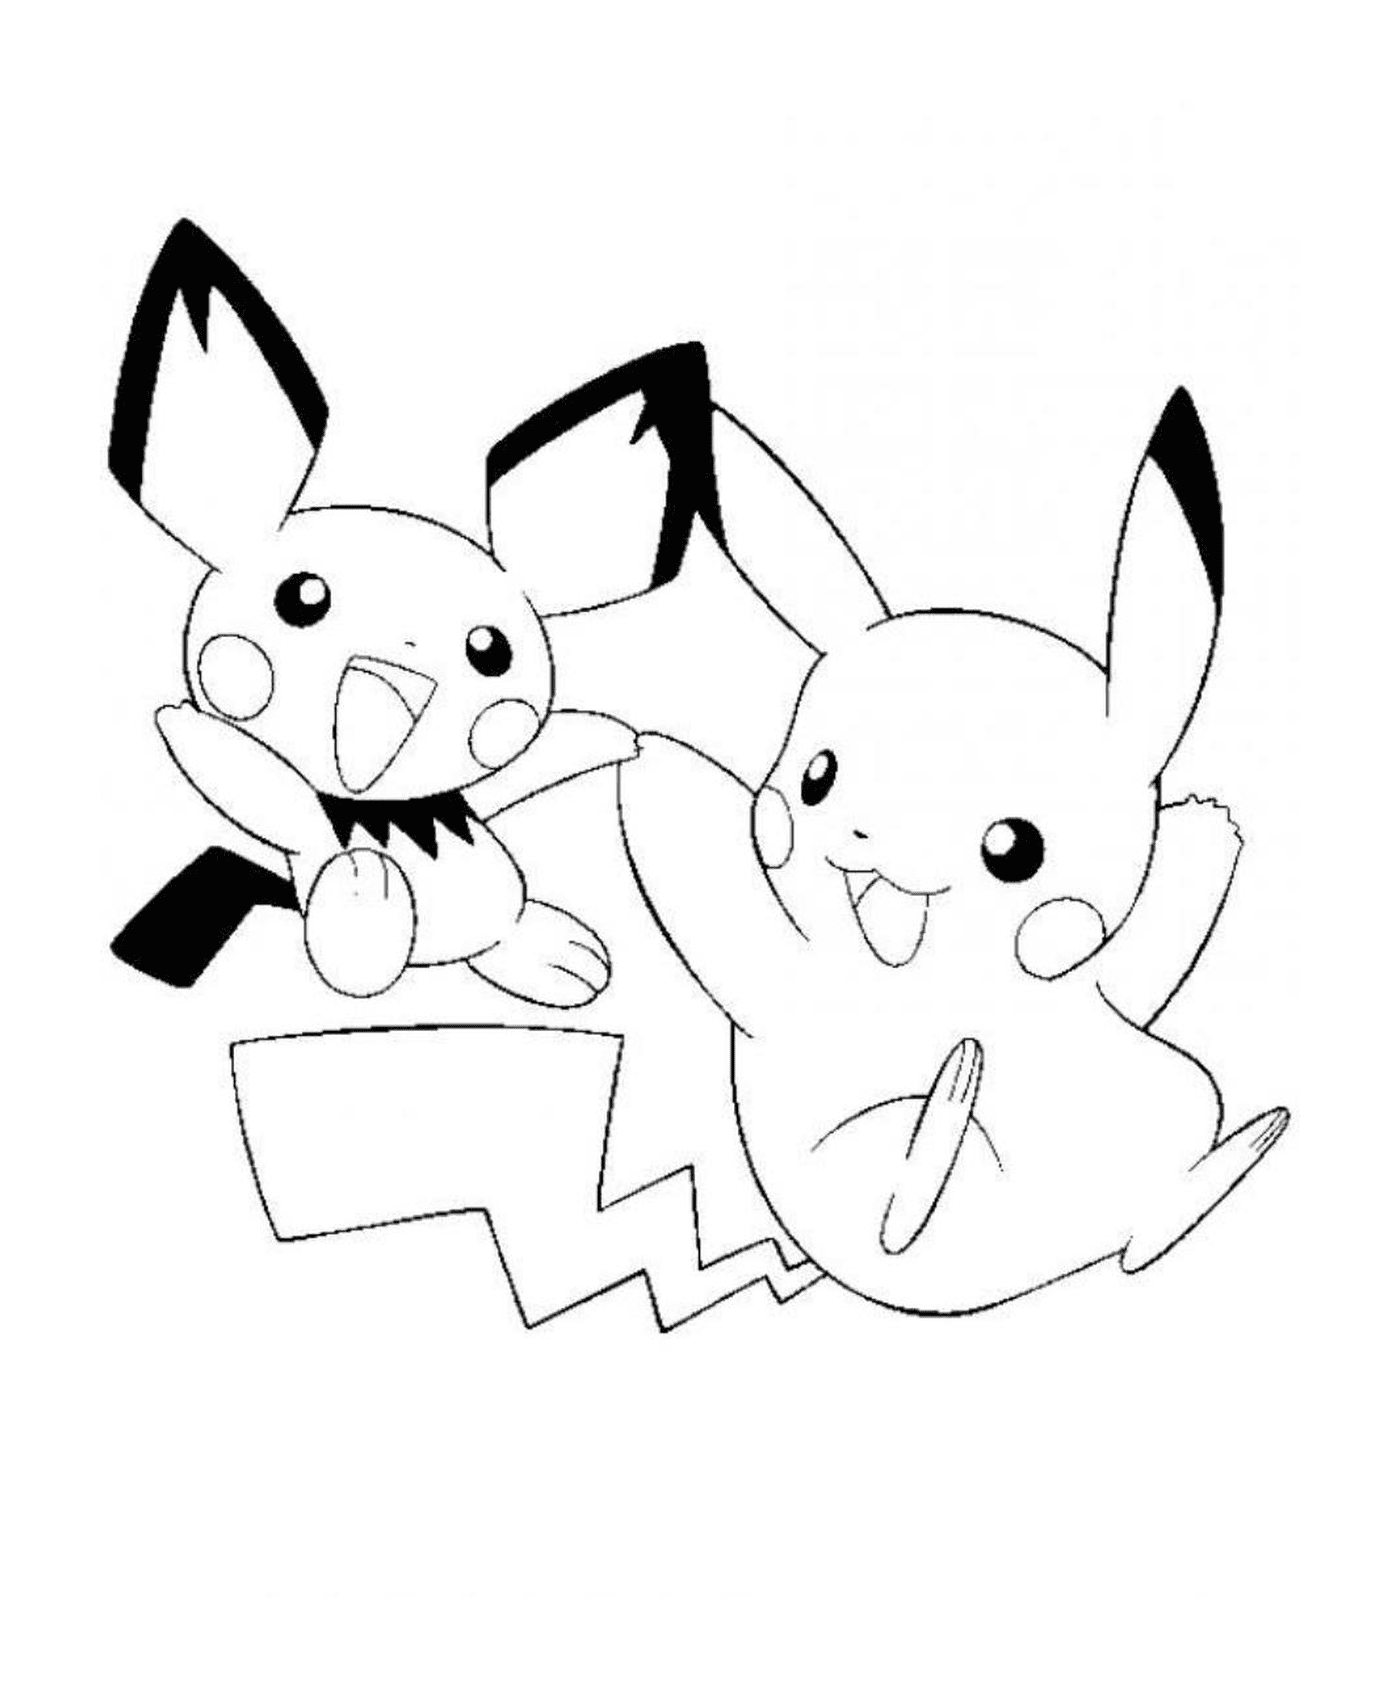  Two Pikachus meet 